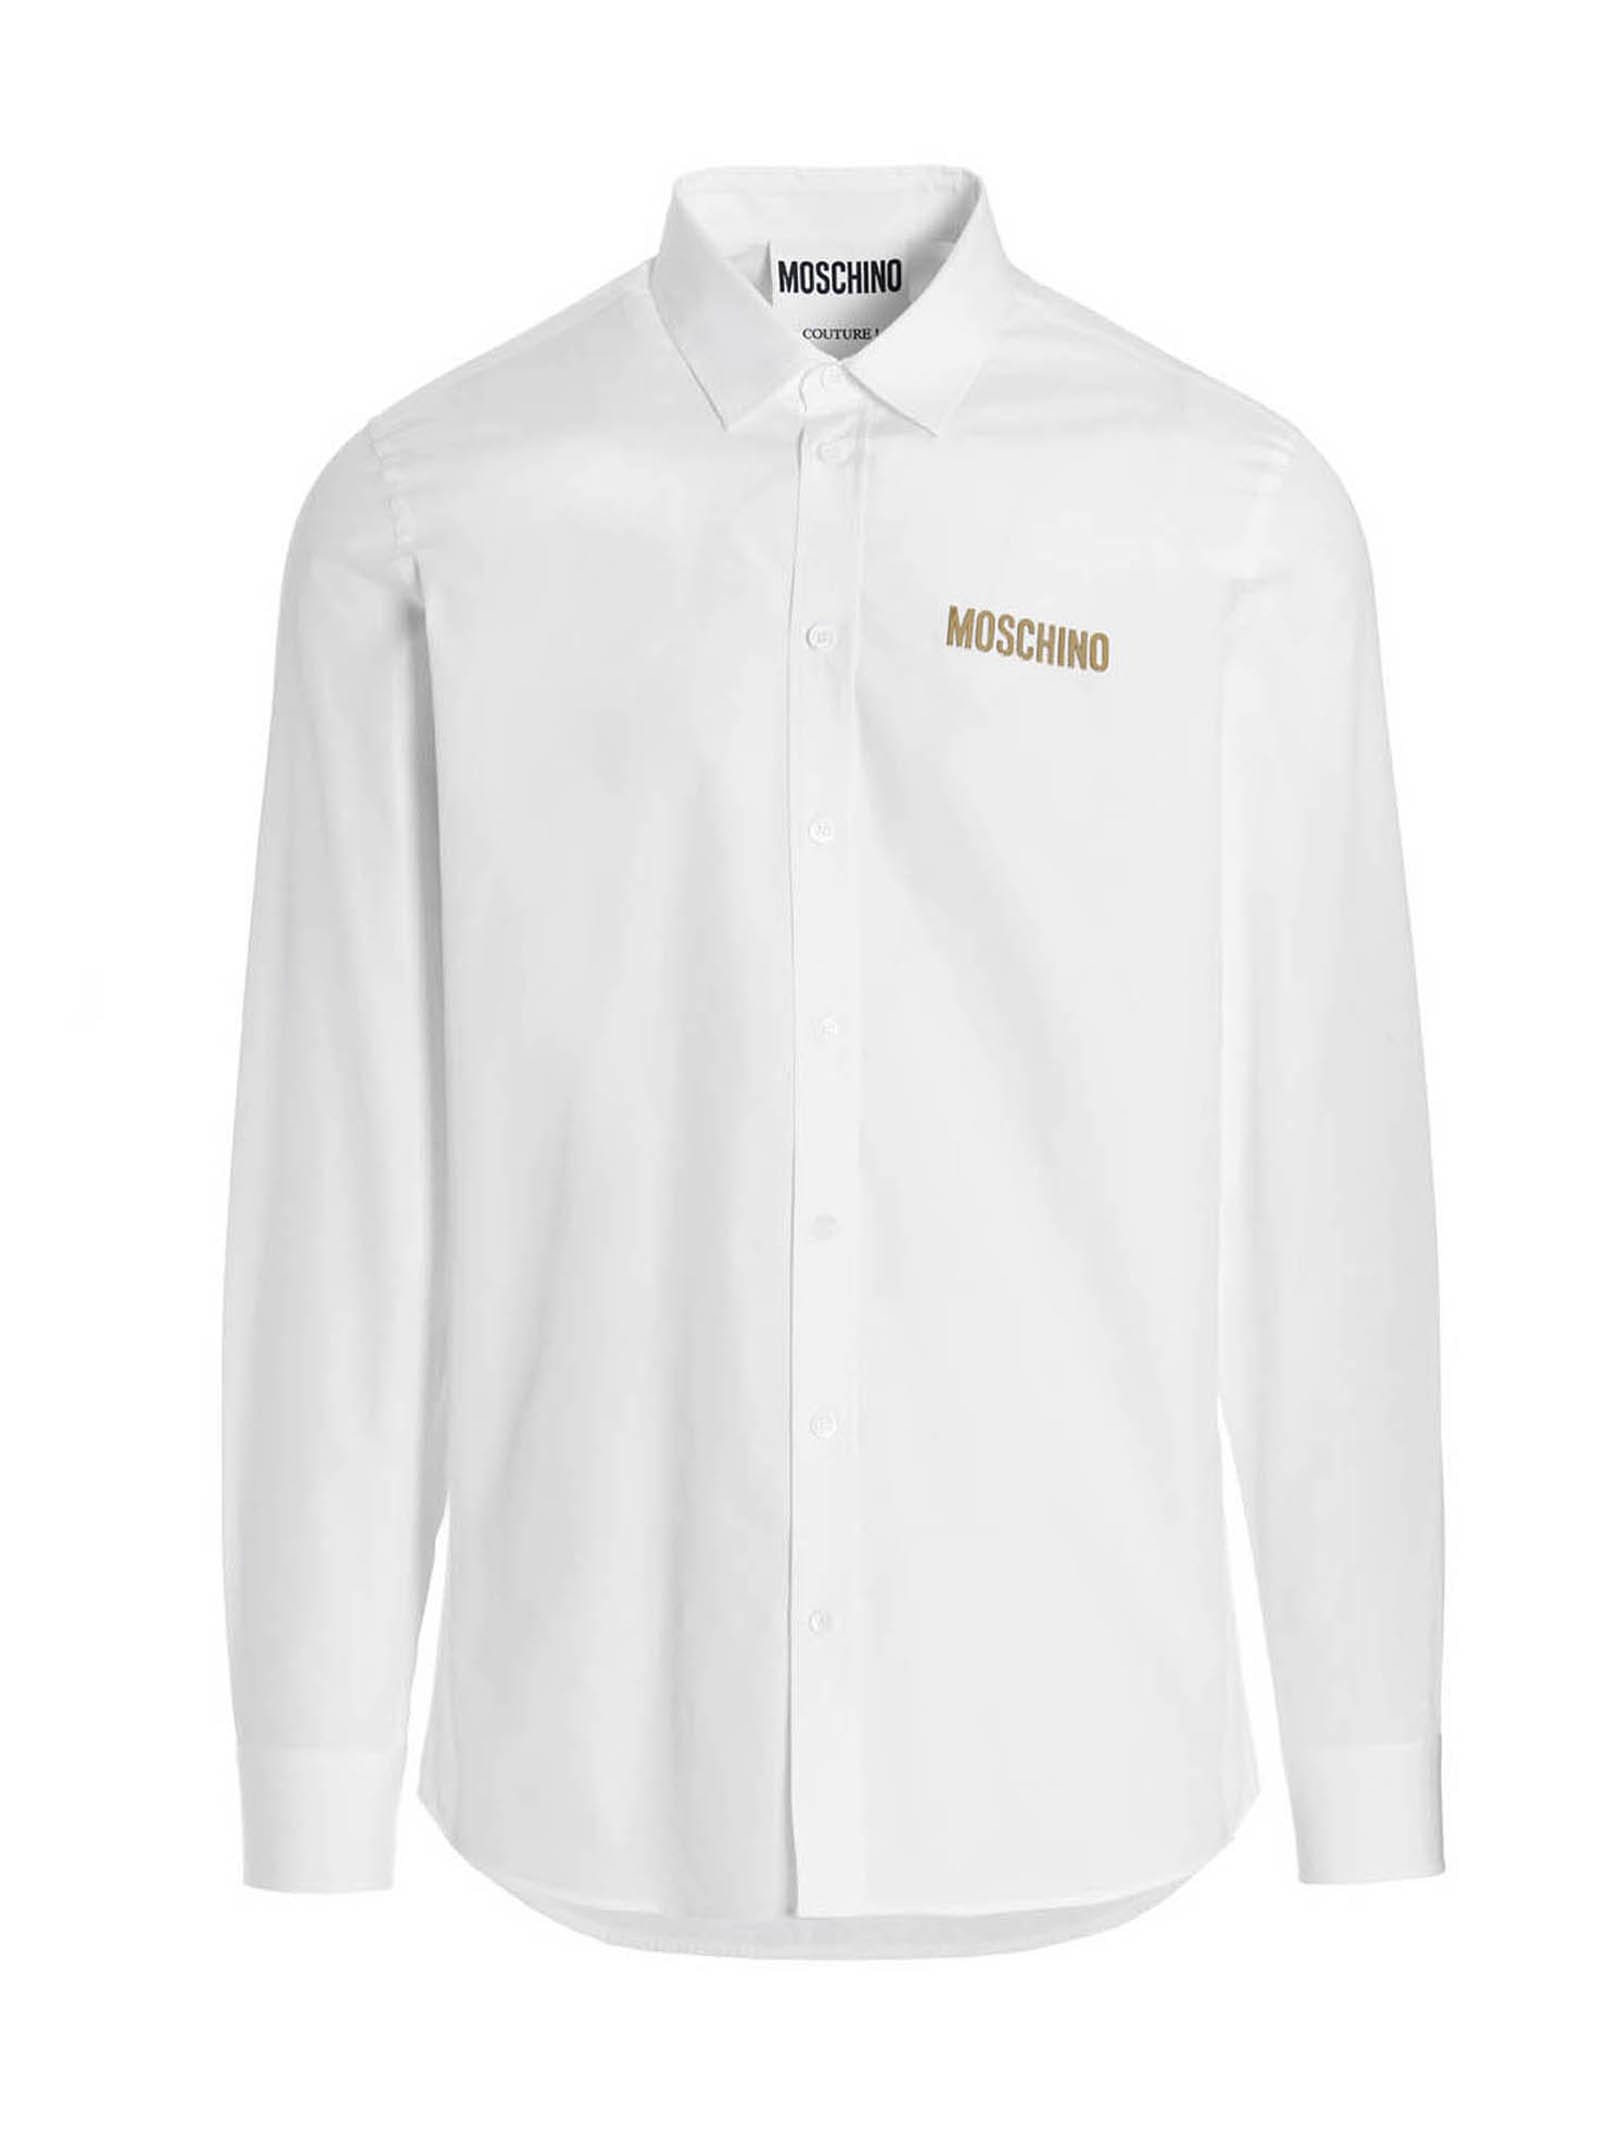 Moschino Logo Cotton Shirt